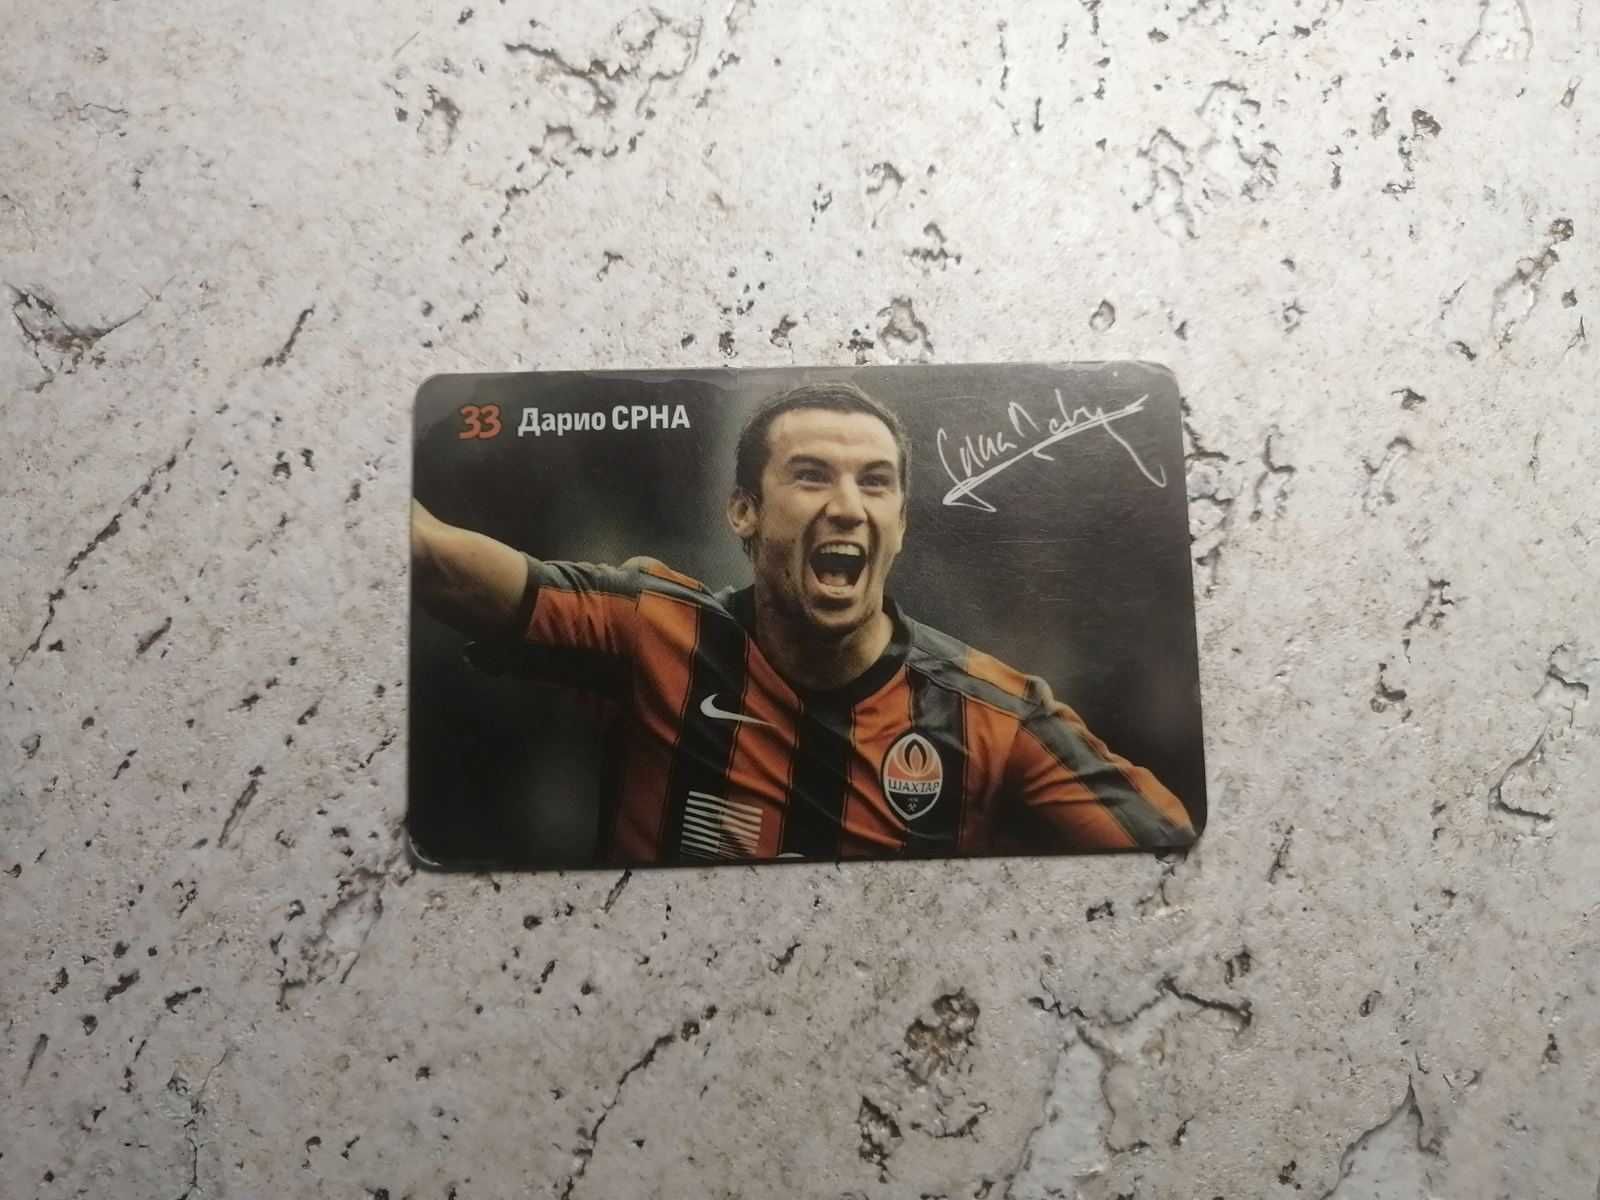 Карточка с фото игрока донецкого Шахтёра Дарио Срна и его автографом